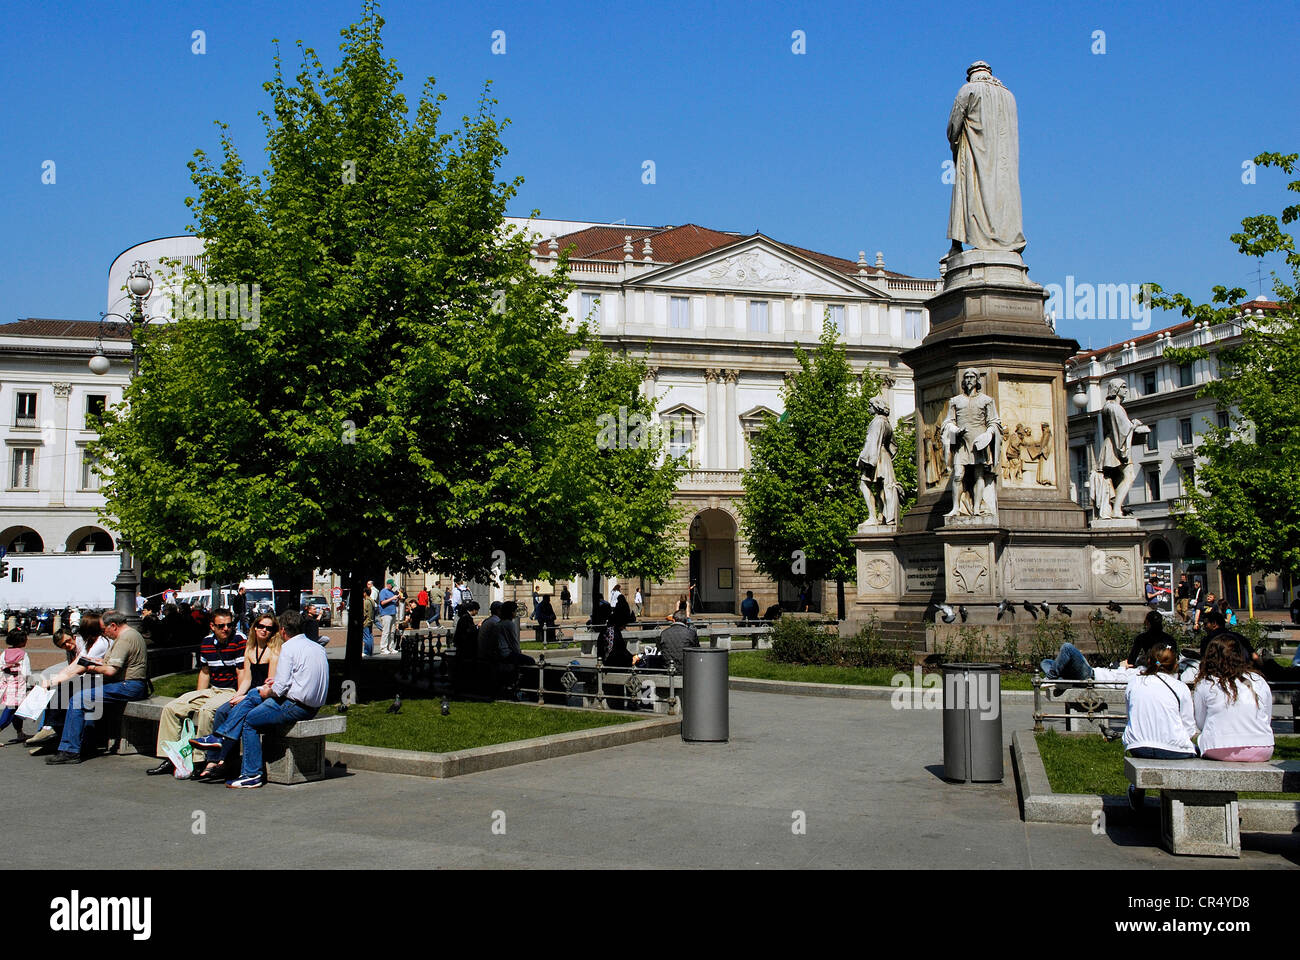 Italy Lombardy Milan Piazza della Scala in middle statue dedicated to Leonardo da Vinci and La Scala Opera House in background Stock Photo